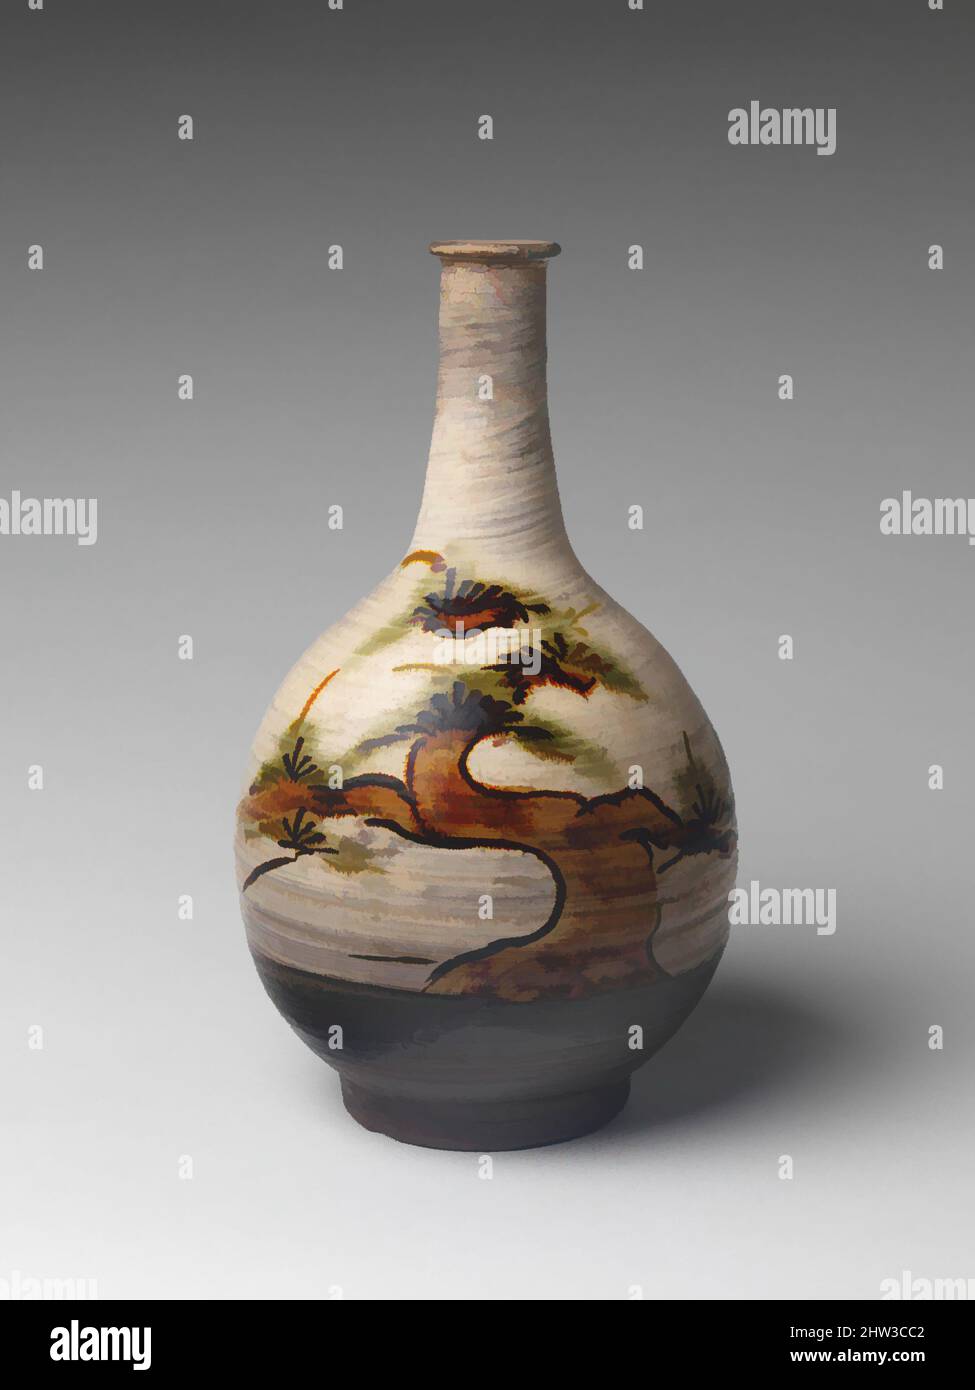 Kunst inspiriert von Flasche mit Dekoration von Kiefer, Edo-Periode (1615–1868), ca. Mitte des 17.. Jahrhunderts, Japan, Steinzeug mit eisenbemaltem Design und kupfergrüner Glasur auf gebürstetem weißem Slip (Takeo Caratsu-Ware), H. 13 Zoll (33 cm); Durchm. 7 1/2 Zoll (19,1 cm), Keramik, Diese robuste Flasche, Classic Works modernisiert von Artotop mit einem Schuss Moderne. Formen, Farbe und Wert, auffällige visuelle Wirkung auf Kunst. Emotionen durch Freiheit von Kunstwerken auf zeitgemäße Weise. Eine zeitlose Botschaft, die eine wild kreative neue Richtung verfolgt. Künstler, die sich dem digitalen Medium zuwenden und die Artotop NFT erschaffen Stockfoto